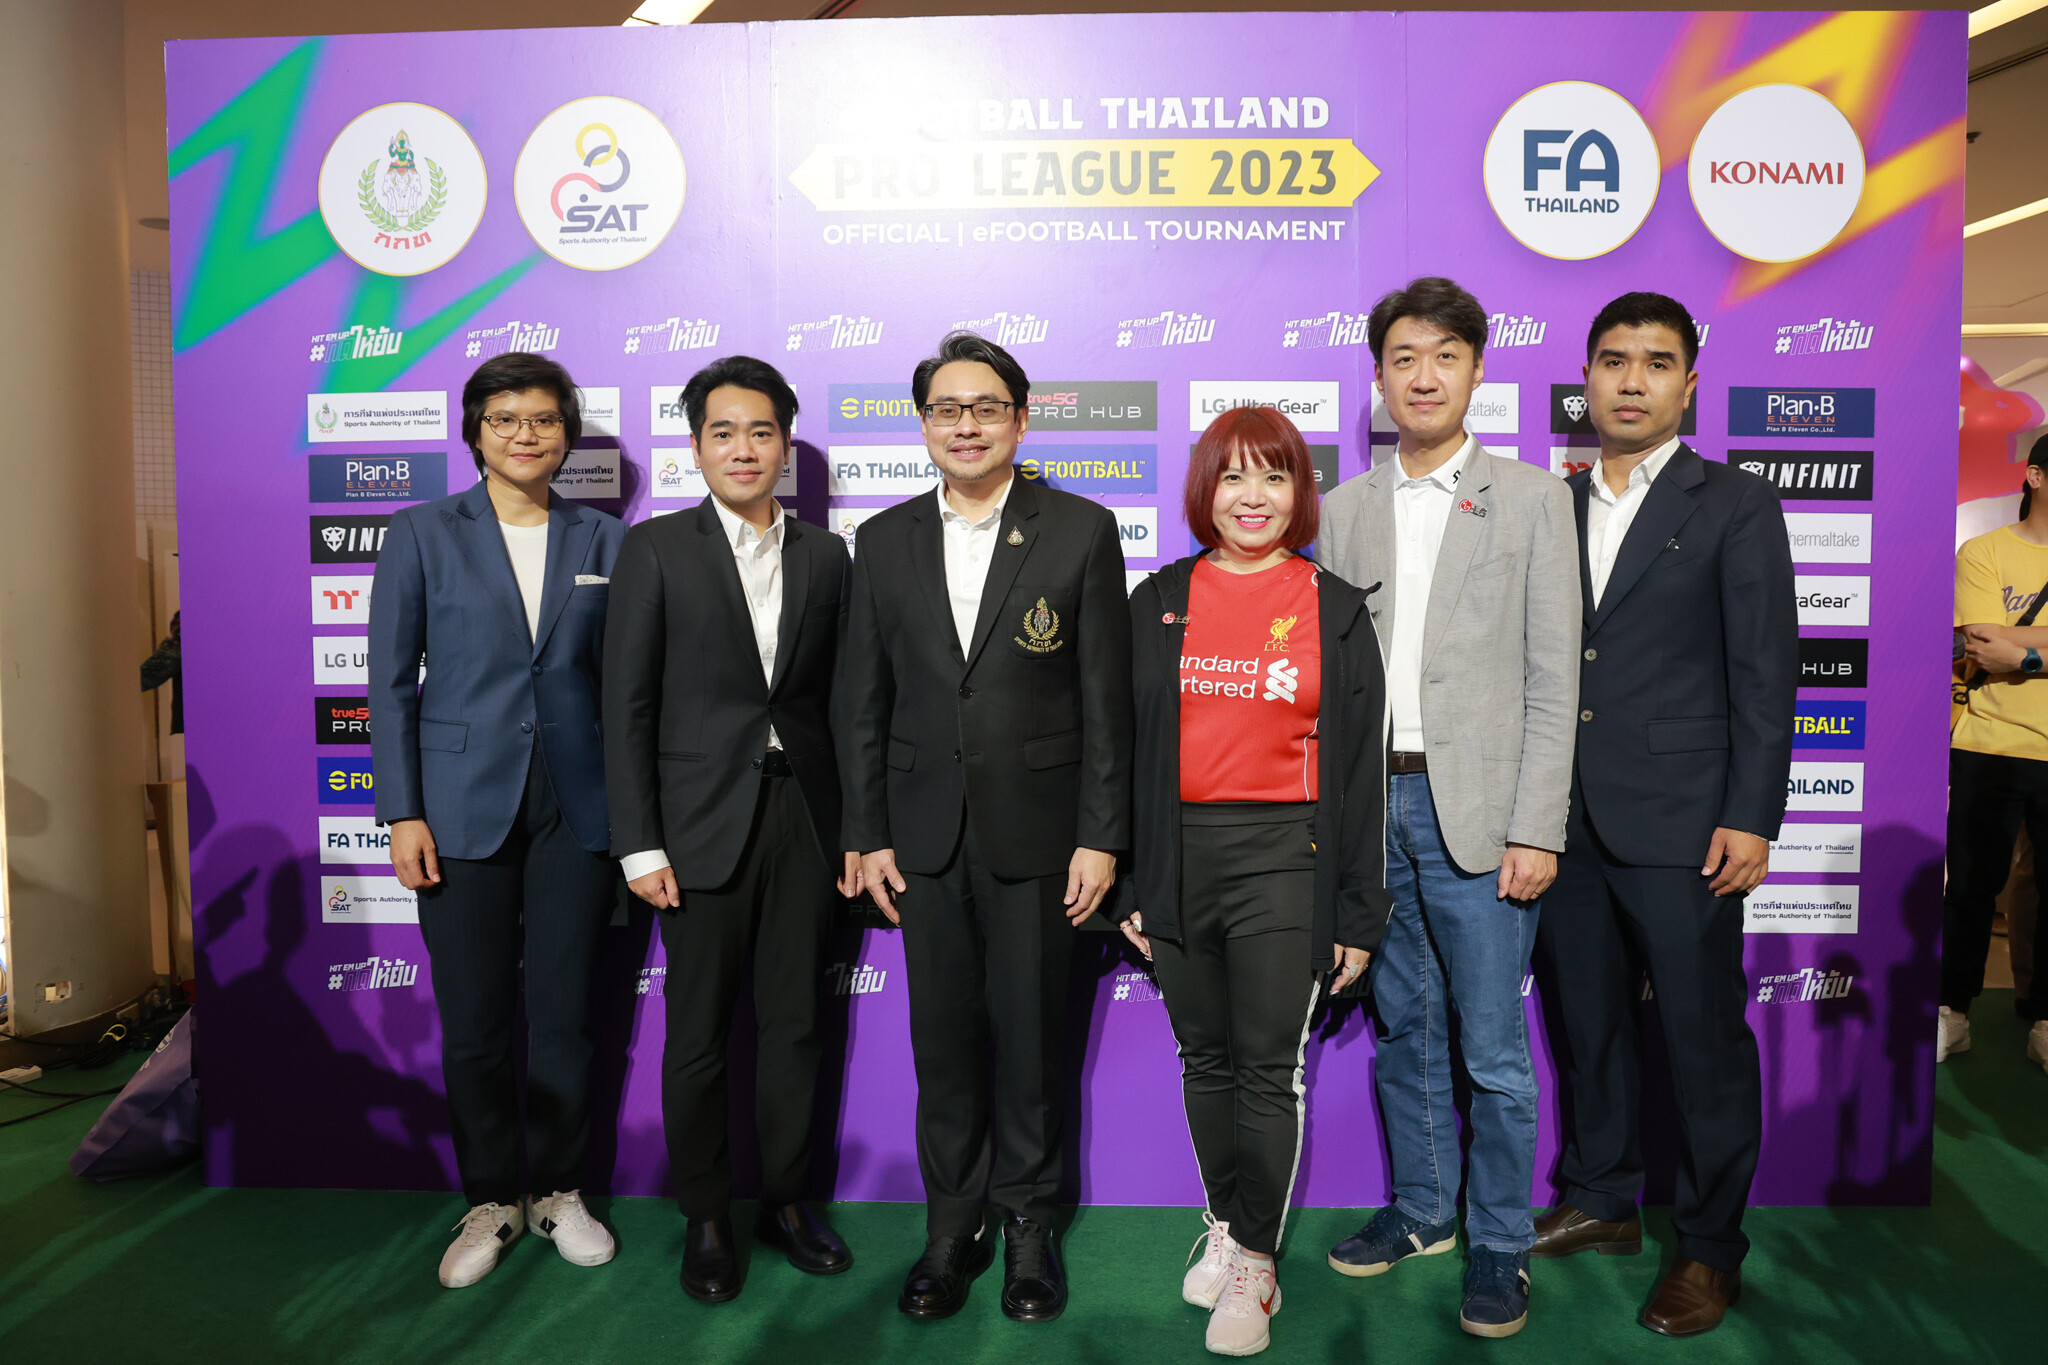 "แพลน บี อีเลฟเว่น" แถลงข่าวจับมือ 2 หน่วยงานรัฐ และภาคเอกชน จัดการแข่งขันอีสปอร์ต "eFootball(TM) Thailand Pro League 2023"